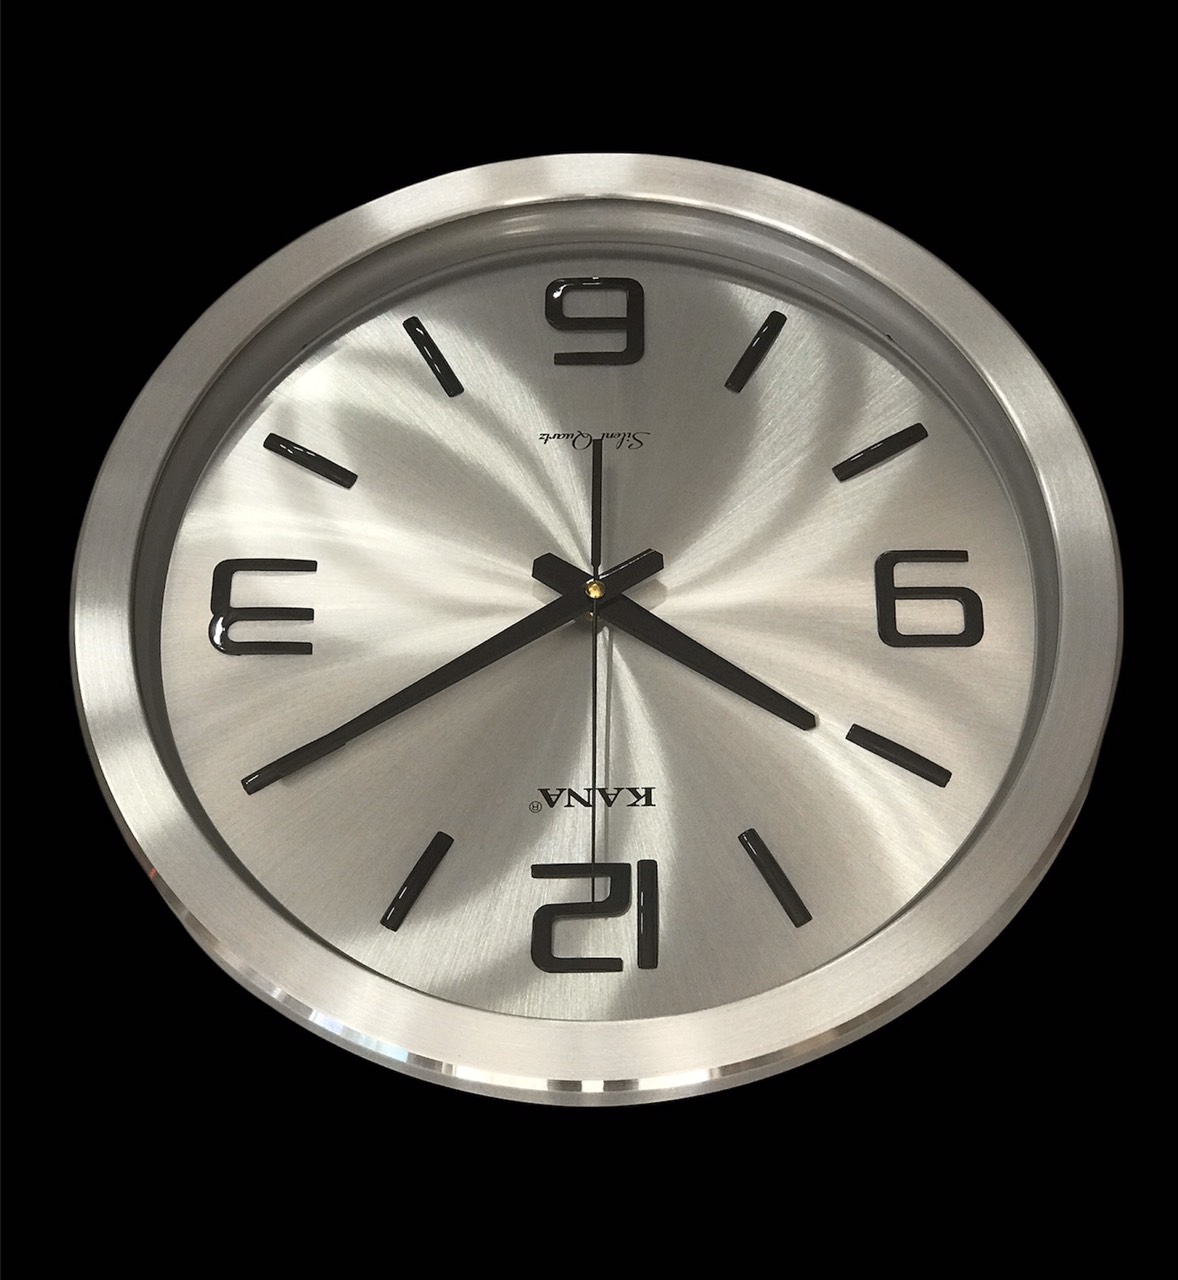 Đồng hồ treo tường vỏ nhôm cao cấp KN-45W (38cm)